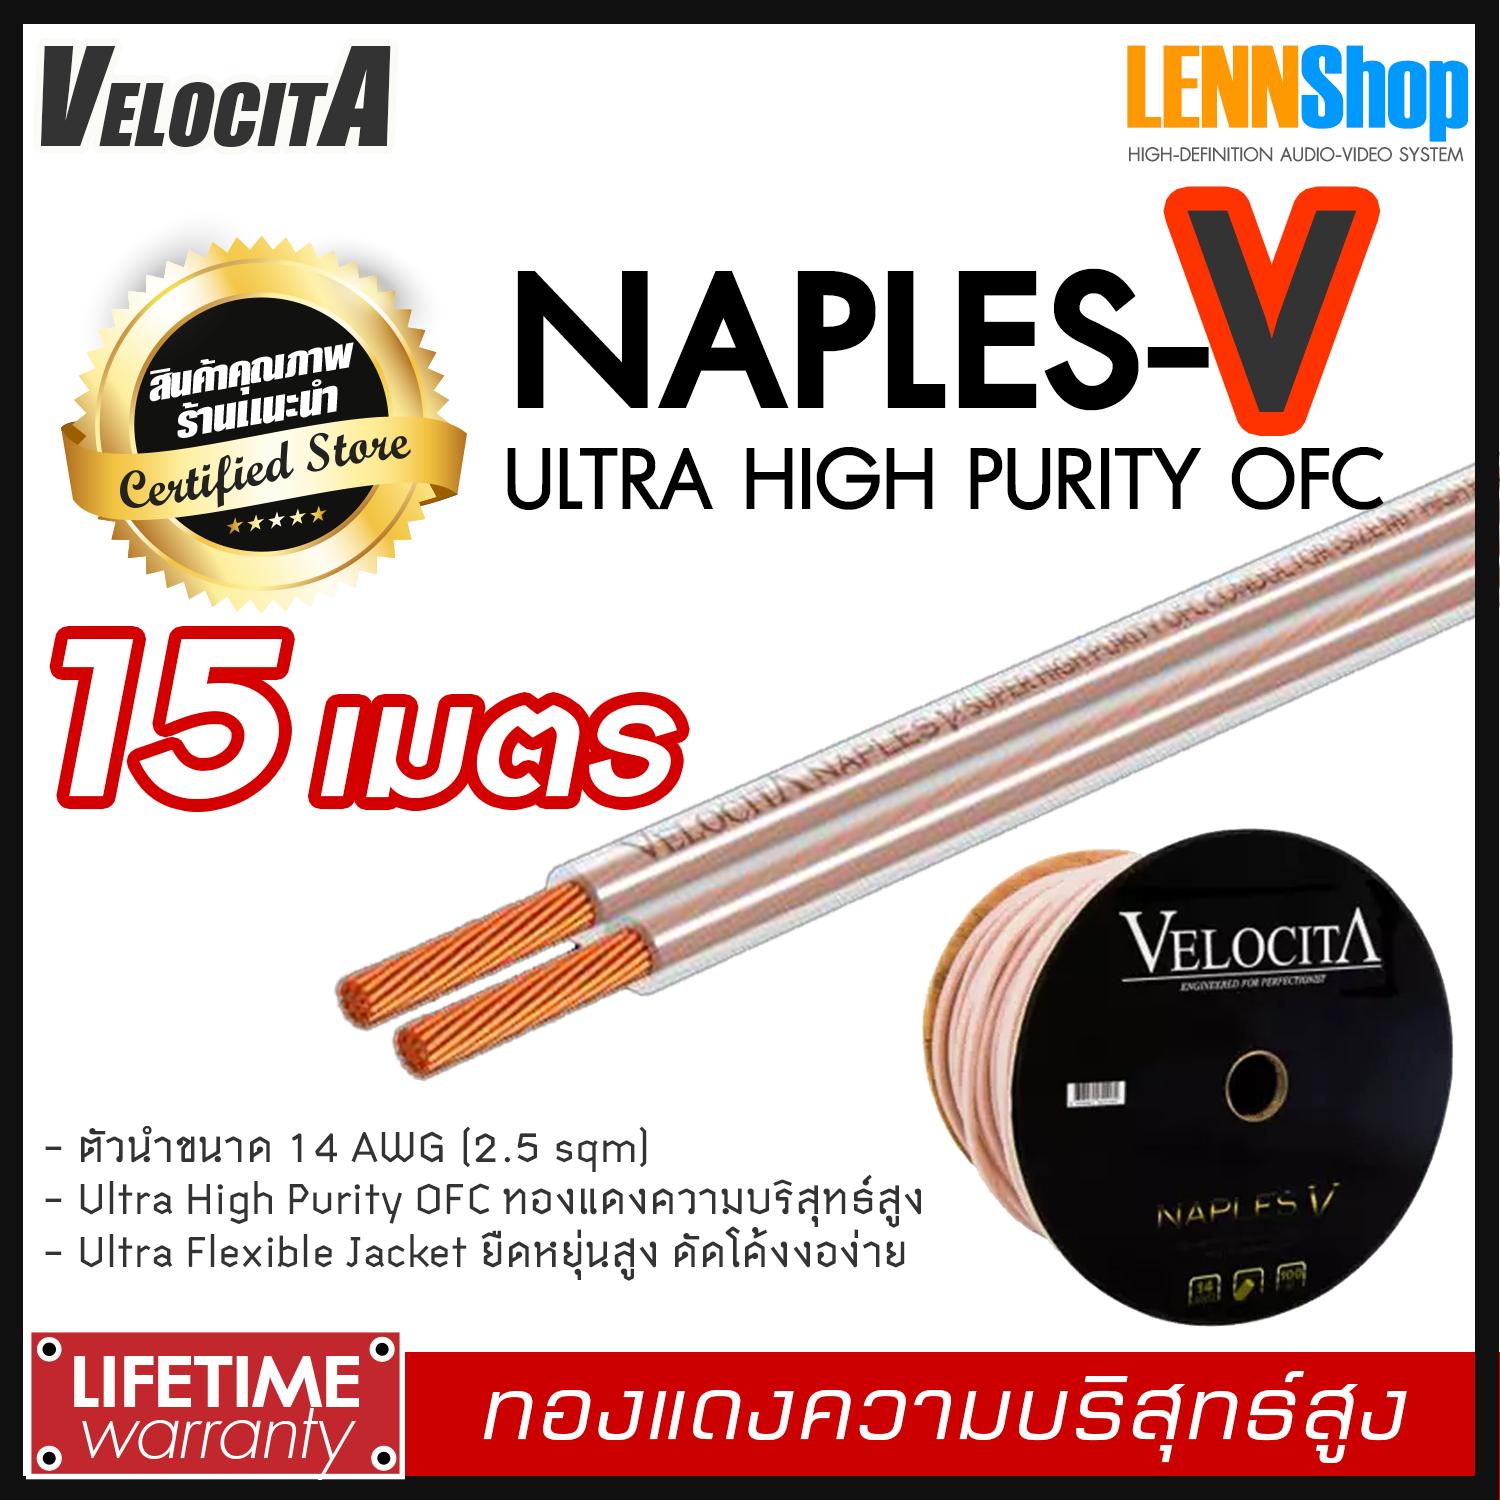 VELOCITA : NAPLES V สายลำโพง Ultra High Purity OFC ความบริสุทธ์สูง ความยาว ตั้งแต่ 1 - 100 เมตร เลือกได้หลายขนาด สินค้าของแท้ 100% จากตัวแทนจำหน่ายอย่างเป็นทางการ จำหน่ายโดย LENNSHOP / Velocita Naple V / naple V สี 15m สี 15m